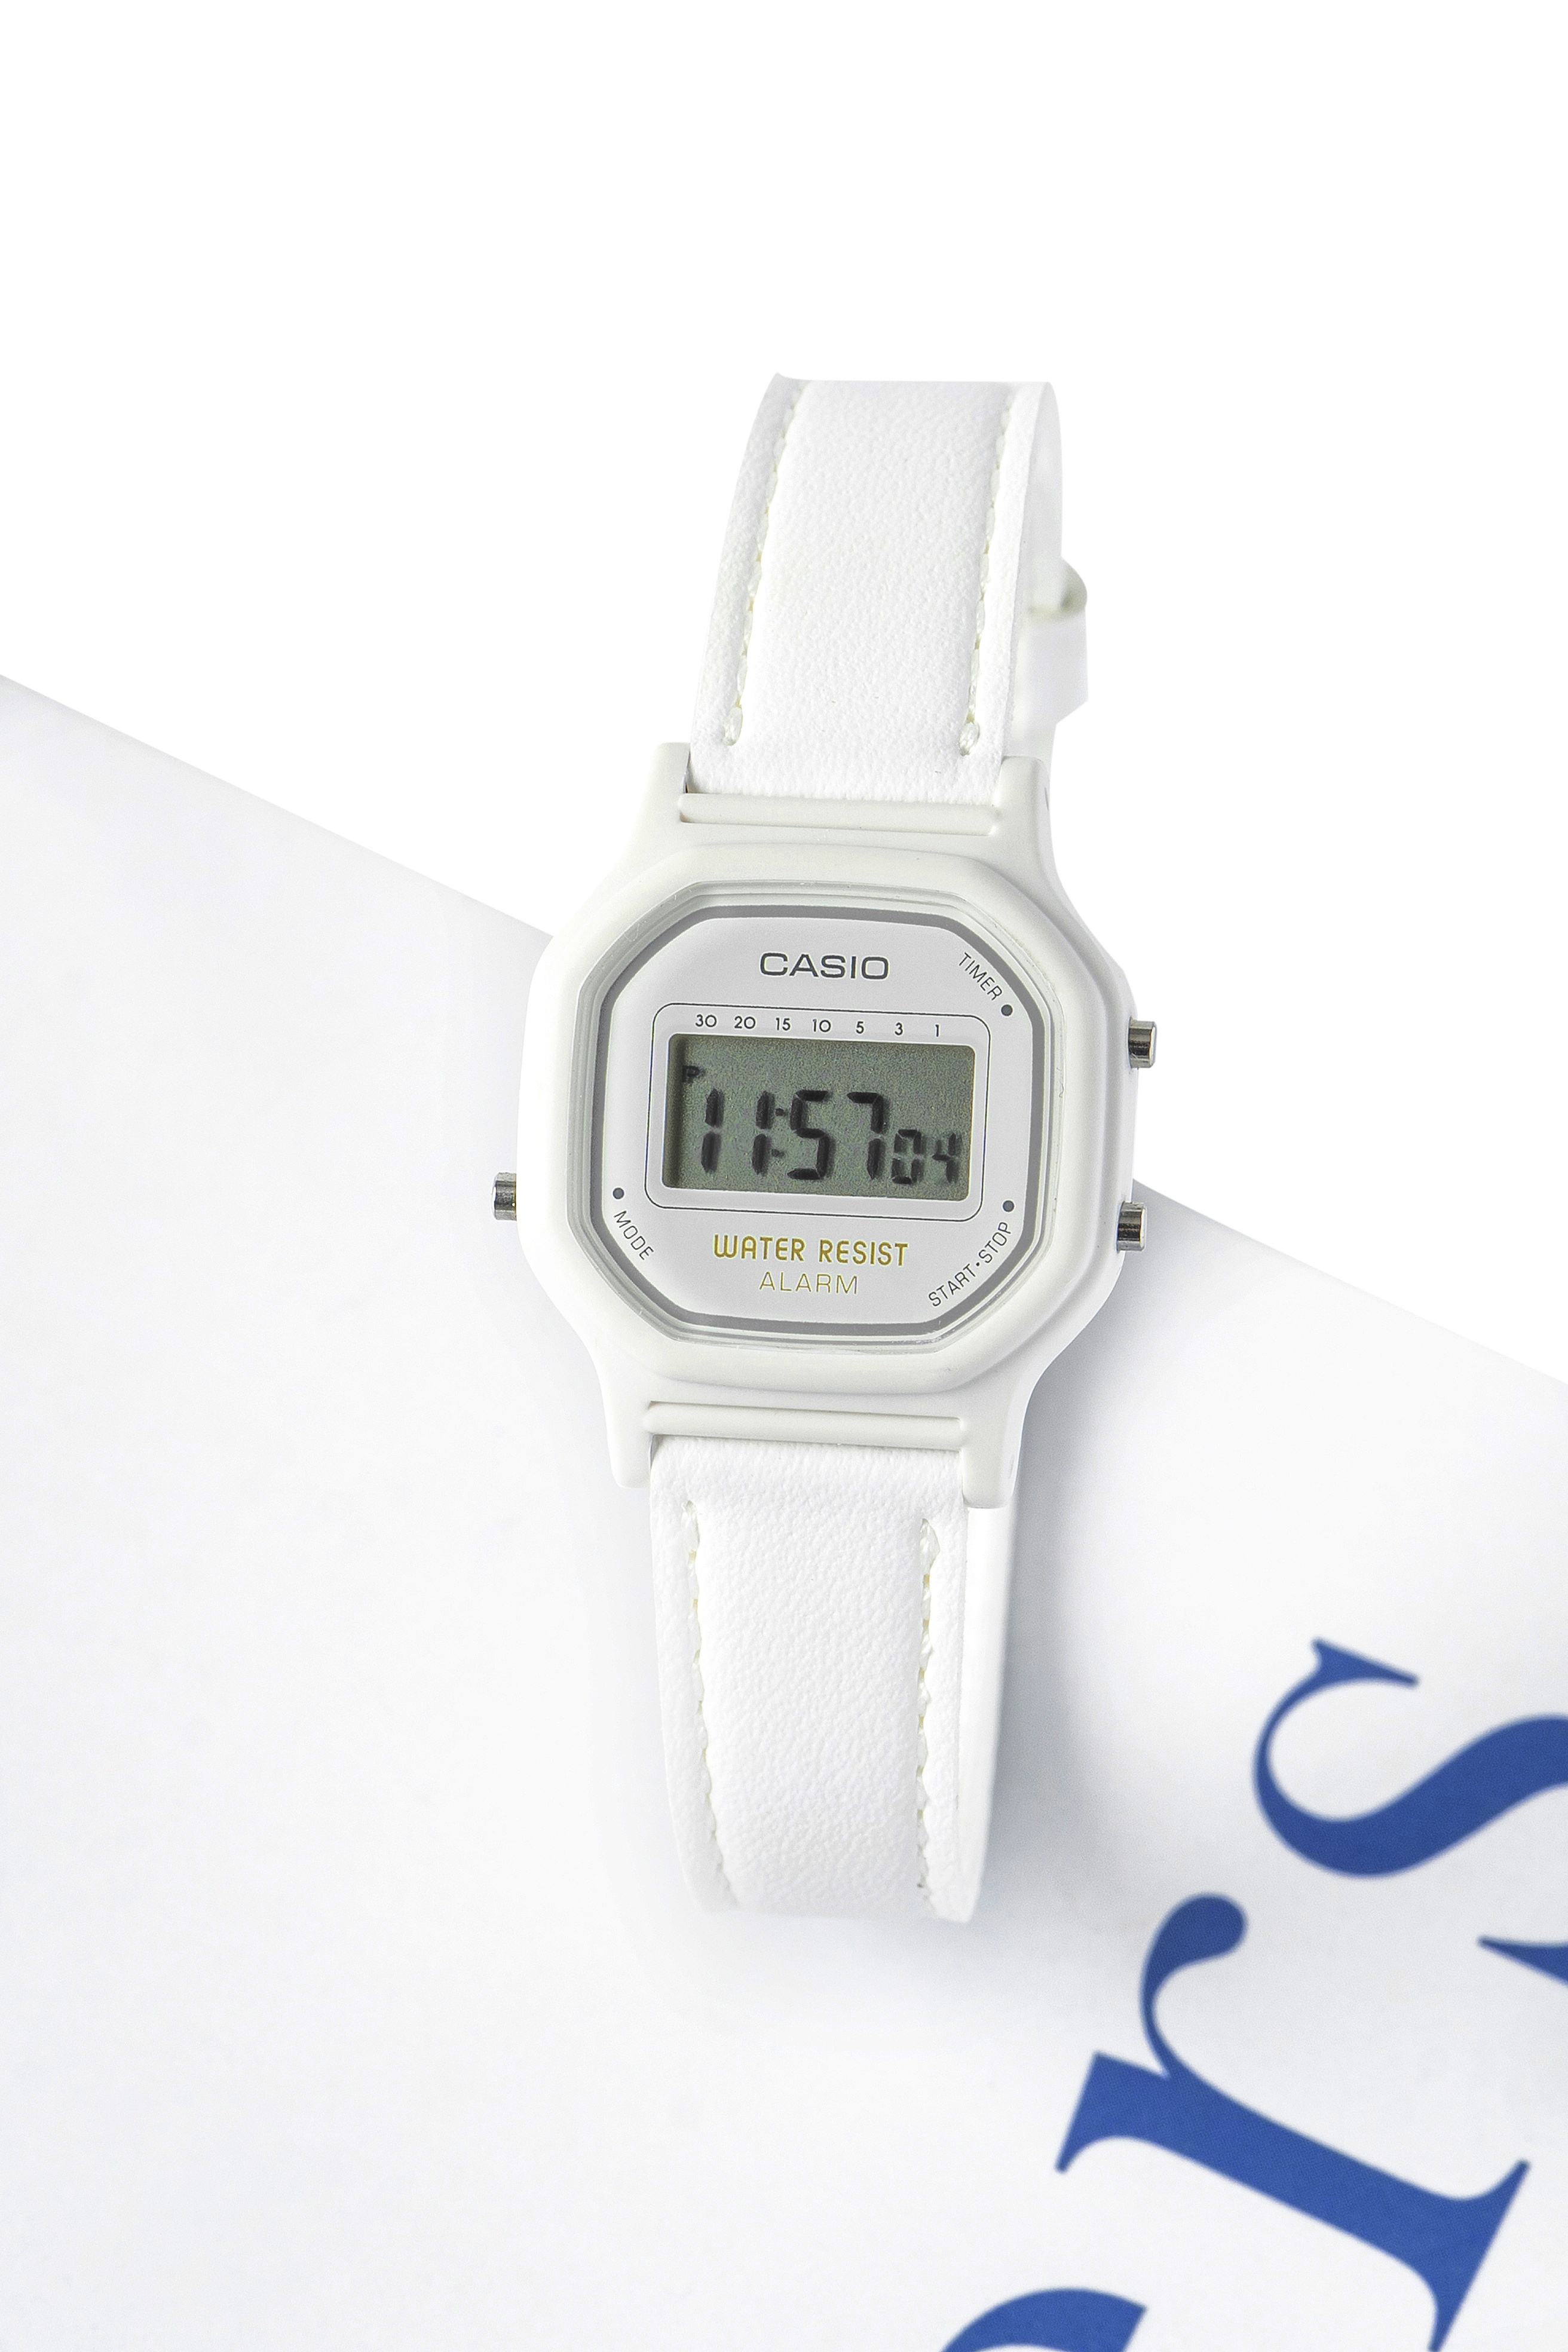 casio卡西欧手表时尚潮流休闲防水石英手表 电子表休闲商务腕表